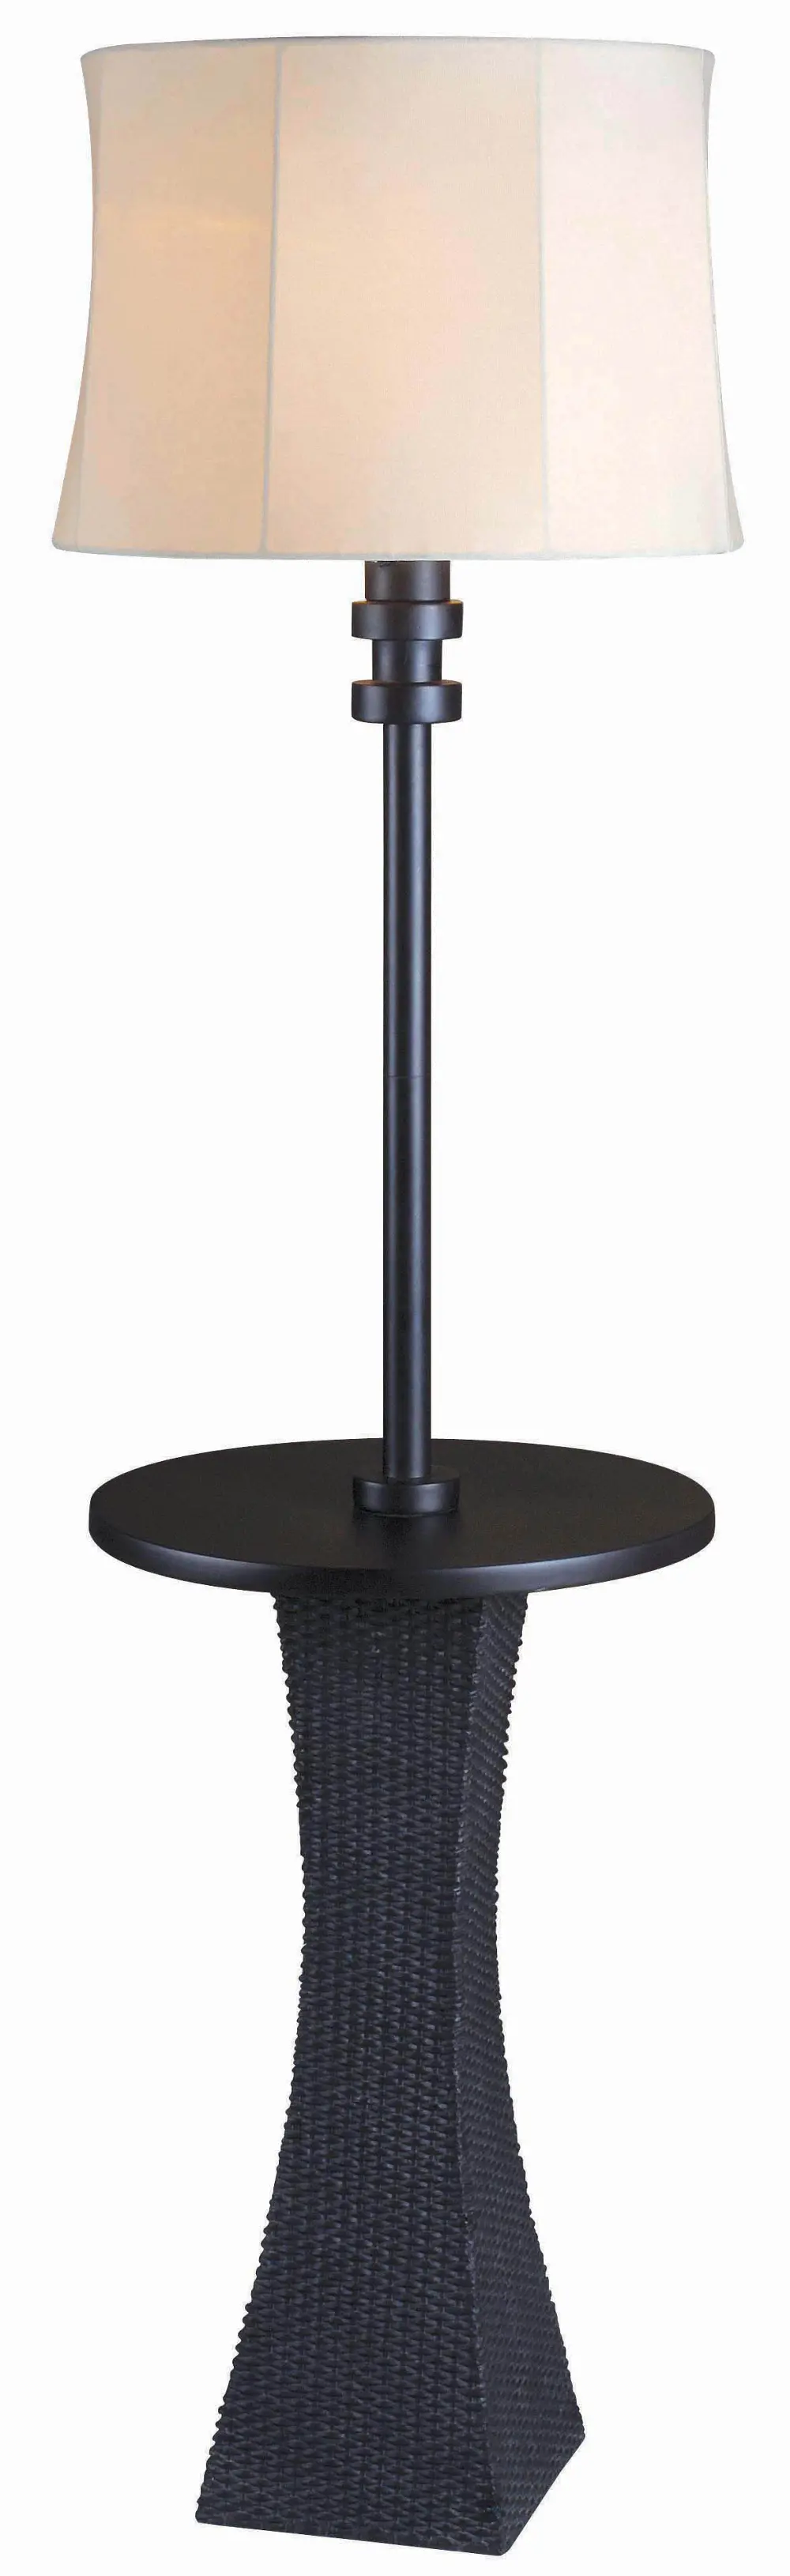 Bronze Outdoor Floor Lamp - Weaver-1